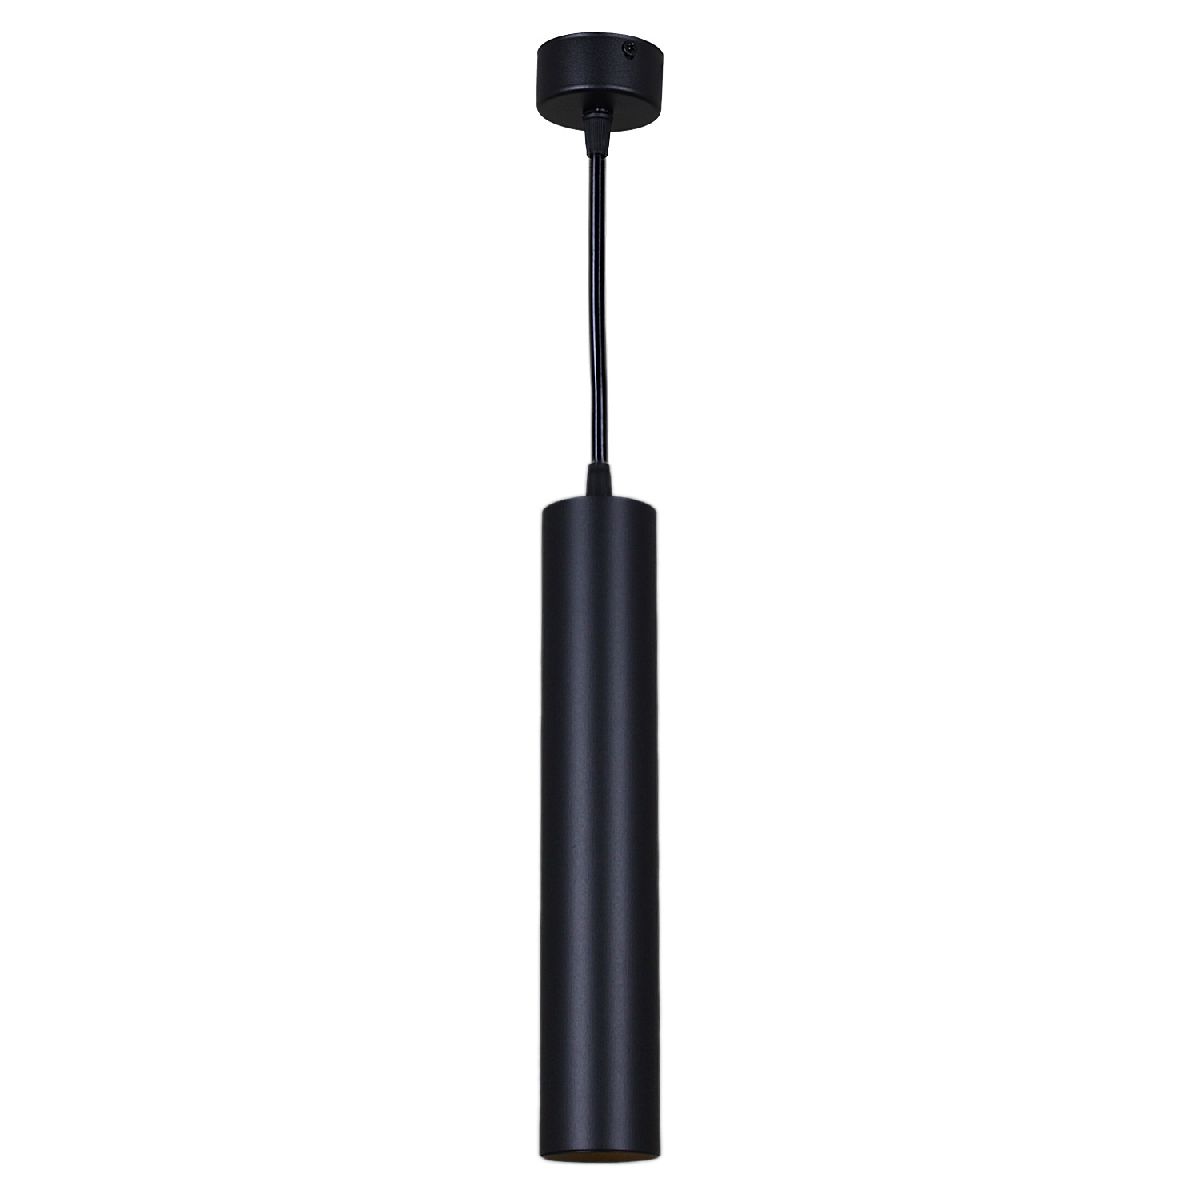 Подвесной светильник Reluce 16002-0.9-001LD 300mm GU10 BK